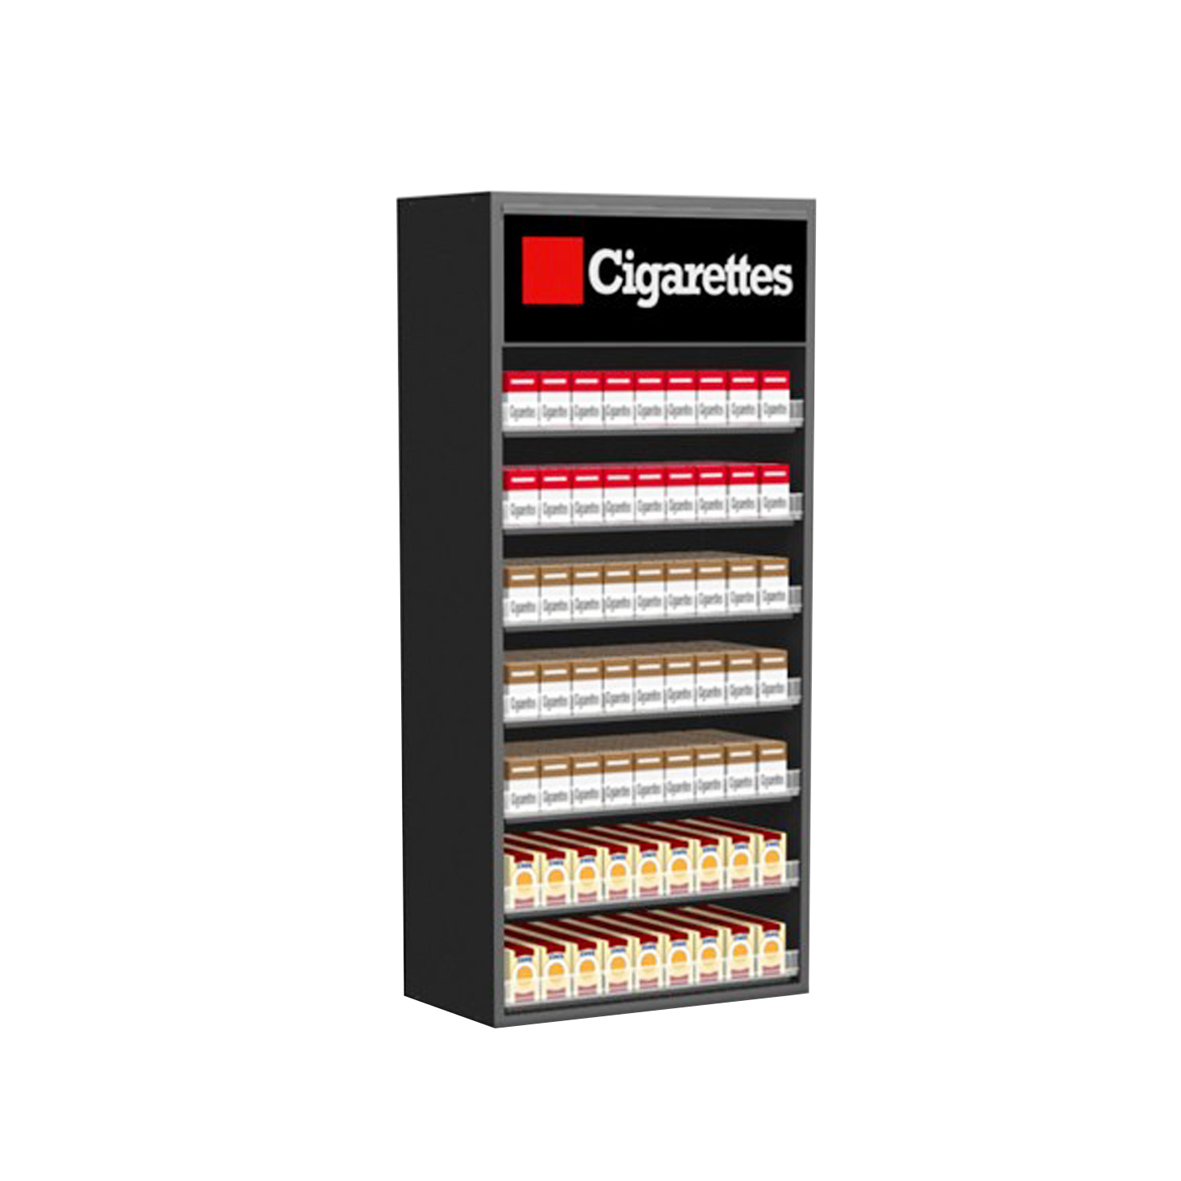 Loor Acrylic floor Cigarette Display shelf e nang le pushers le logo